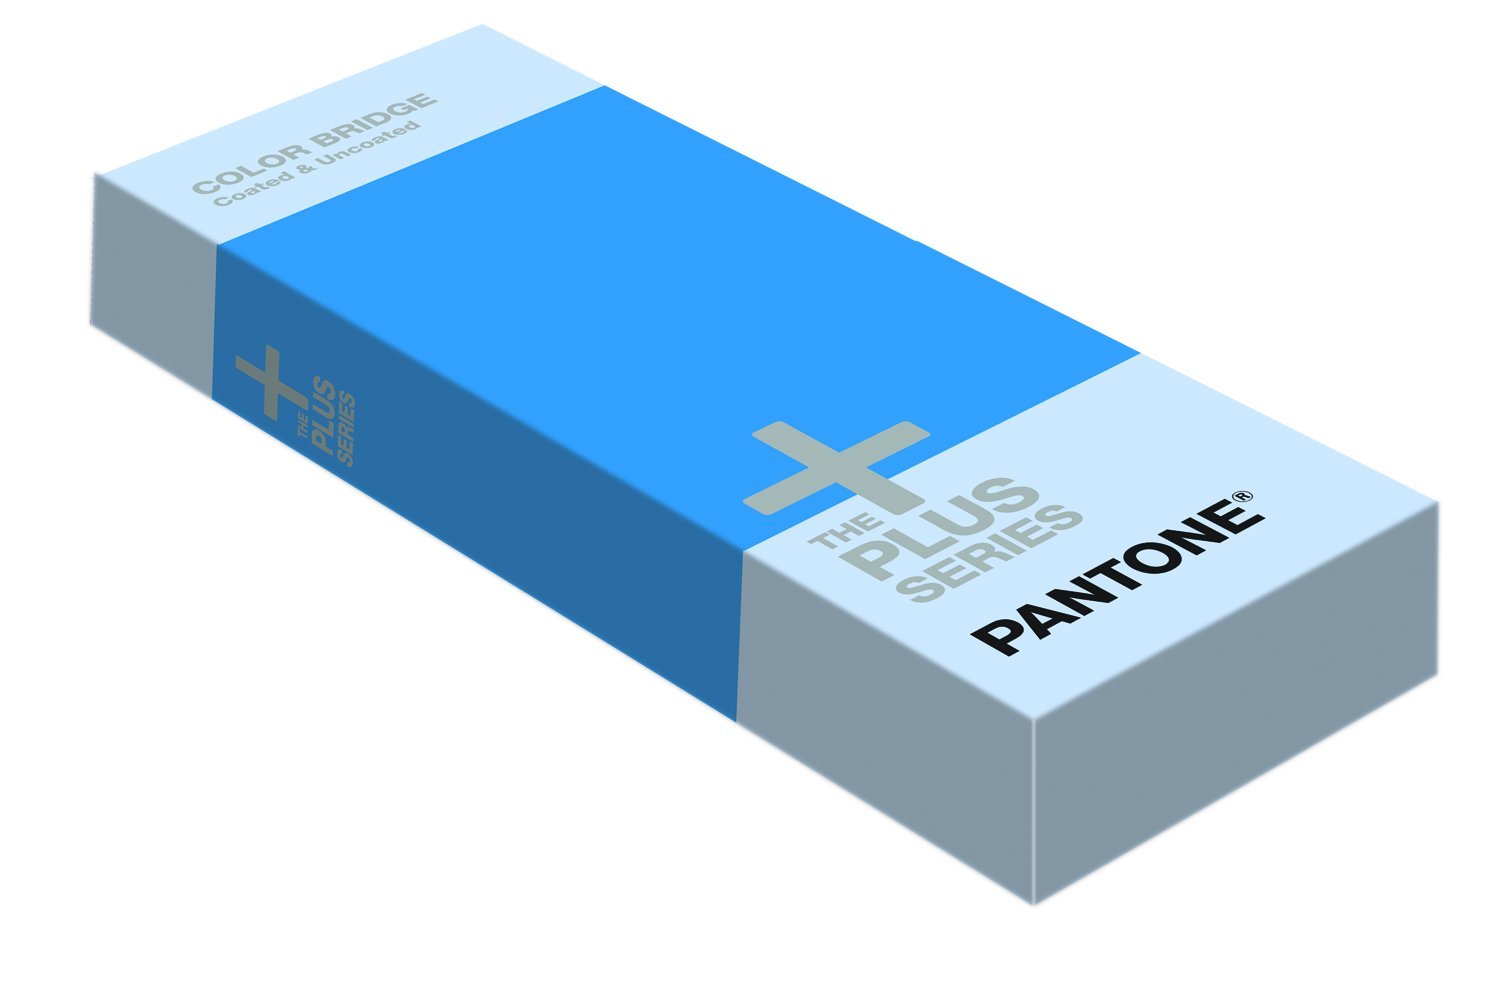 PANTONE GP6102 Plus Series Color Bridge Guide Set